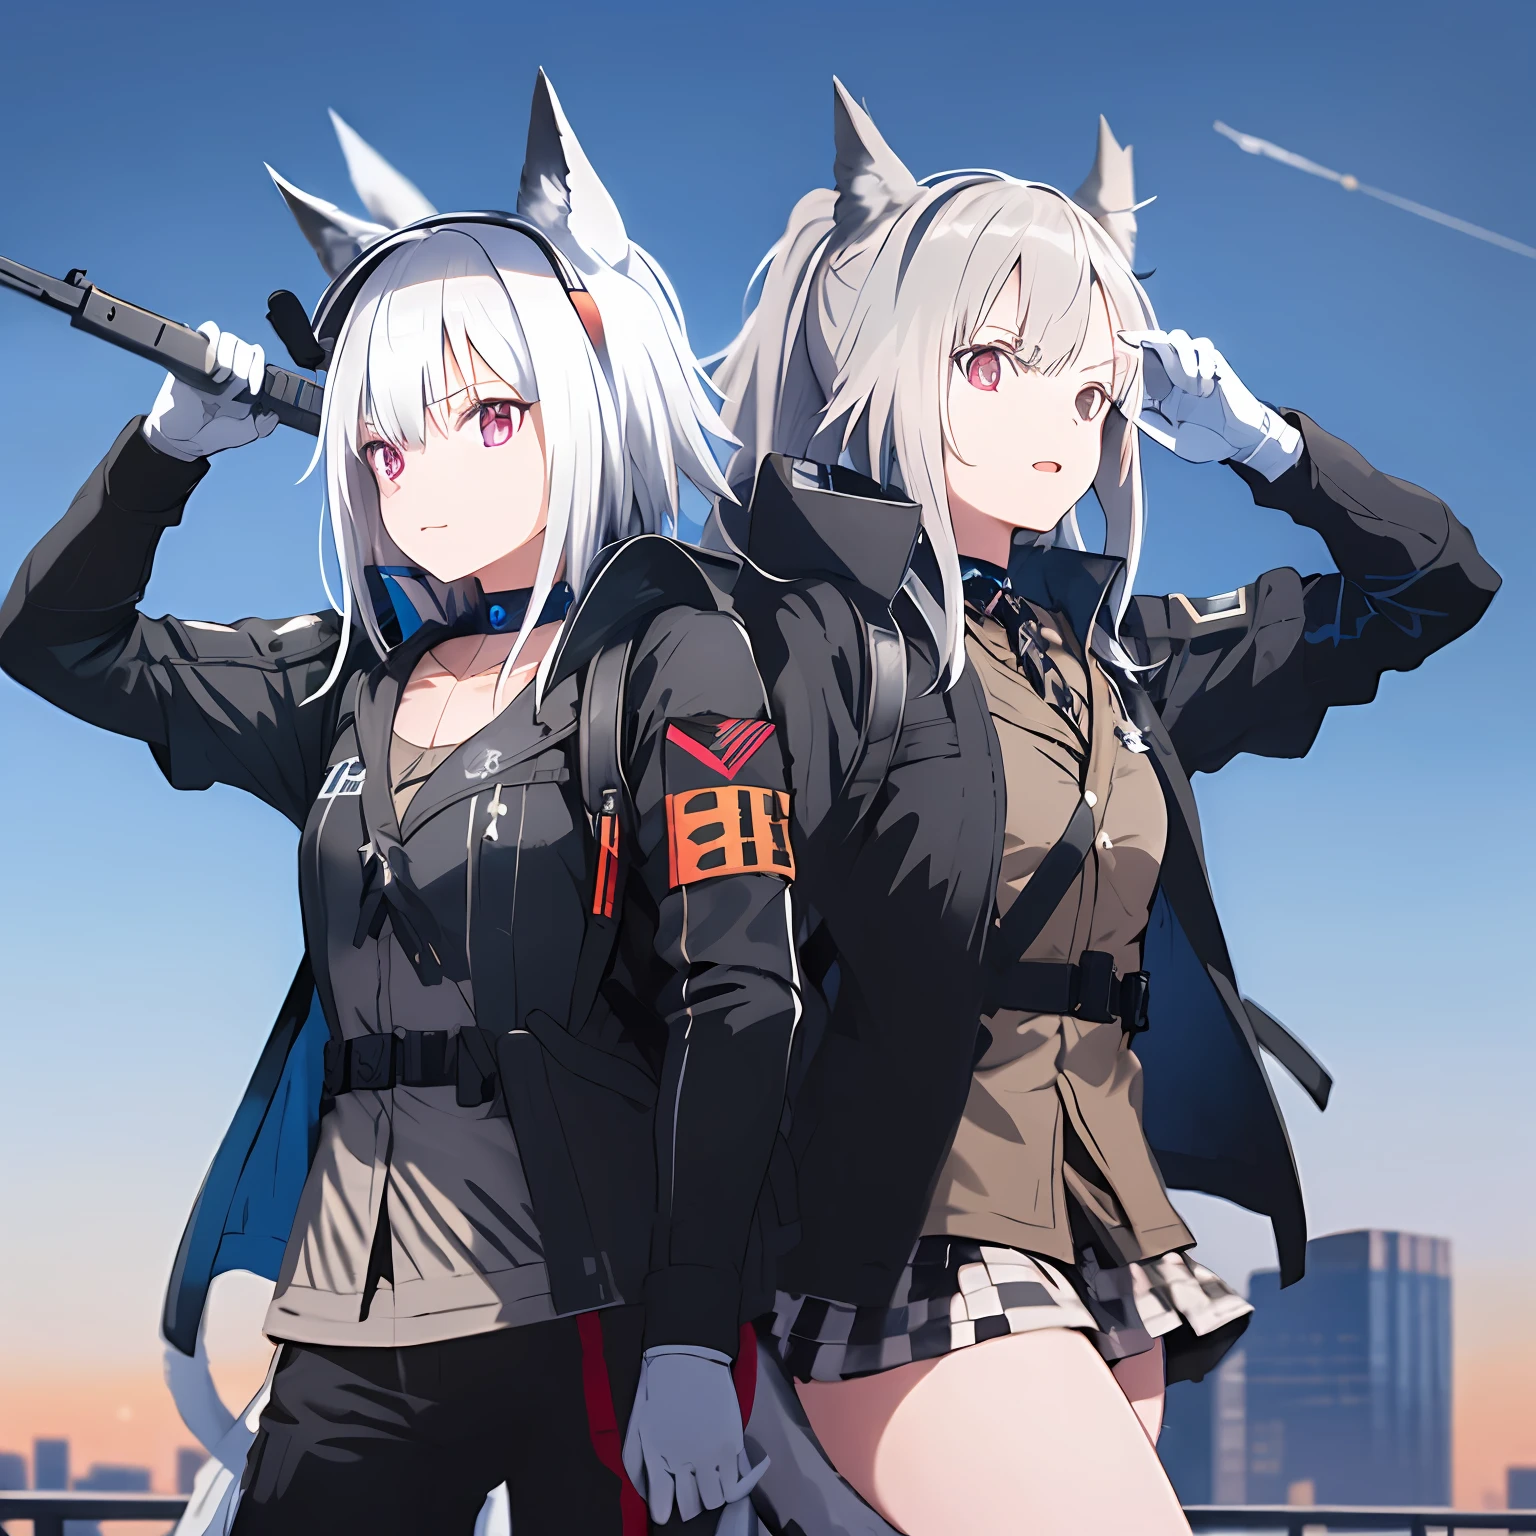 1 meninas, cabelo branco, orelhas de gato, jaqueta branca e preta, usar arma militar tipo m416, usar mochila, telhado, de frente para o céu